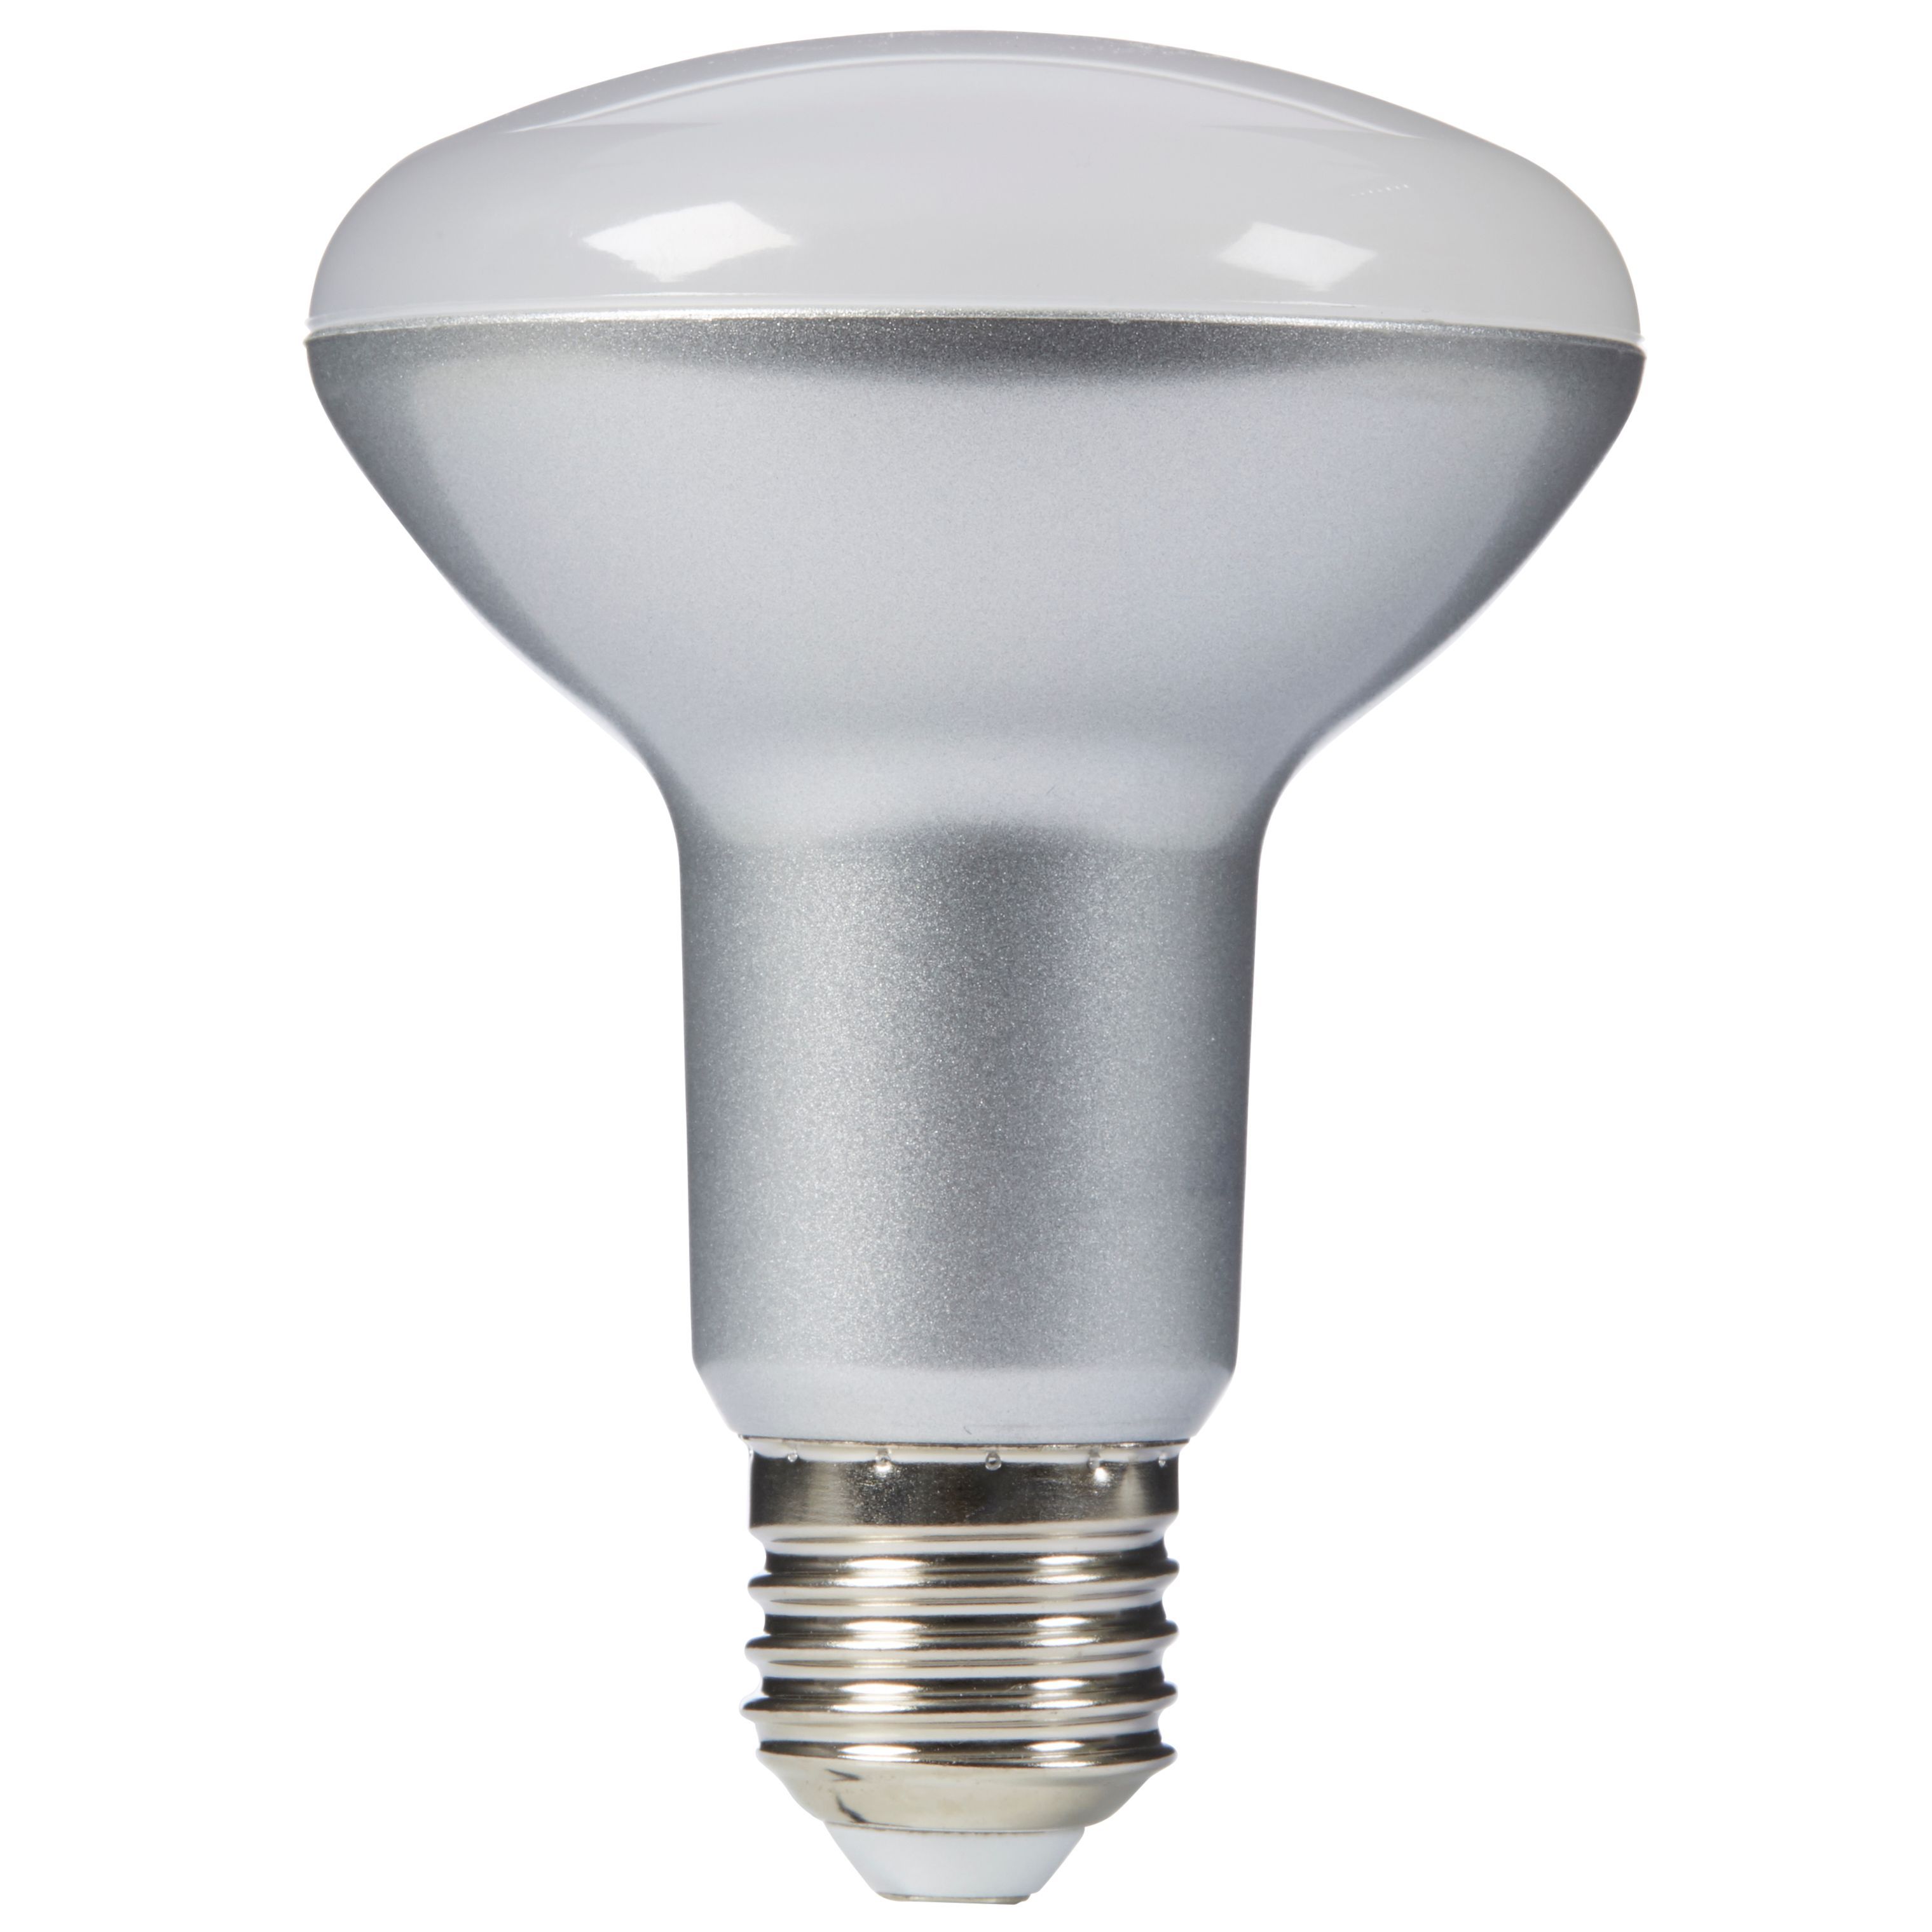 Diall E27 1335lm Warm white LED Light bulb, Pack of 2